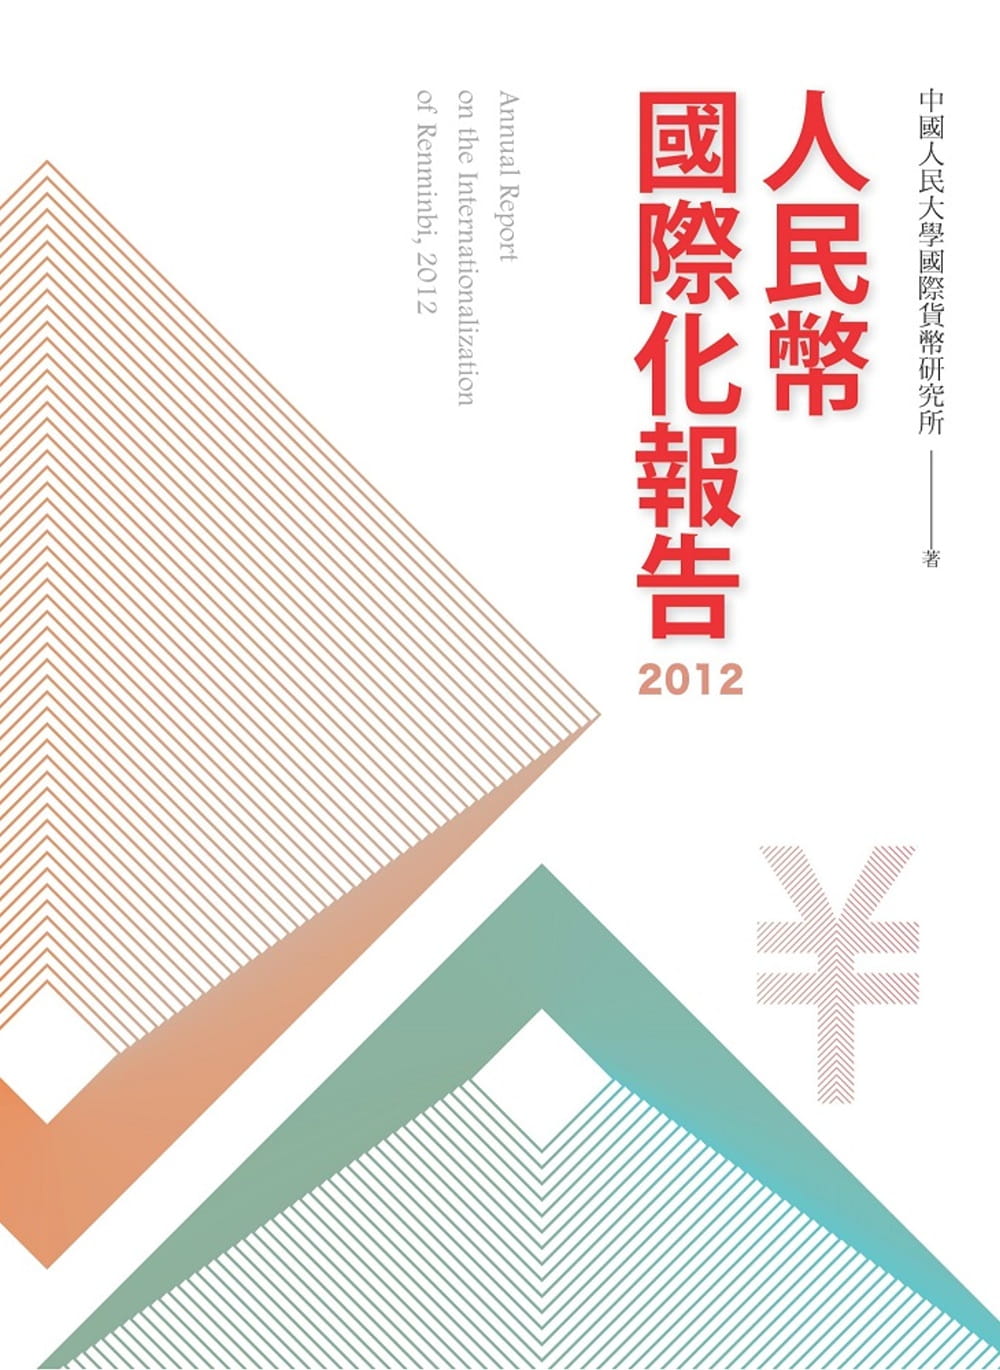 人民幣國際化報告2012